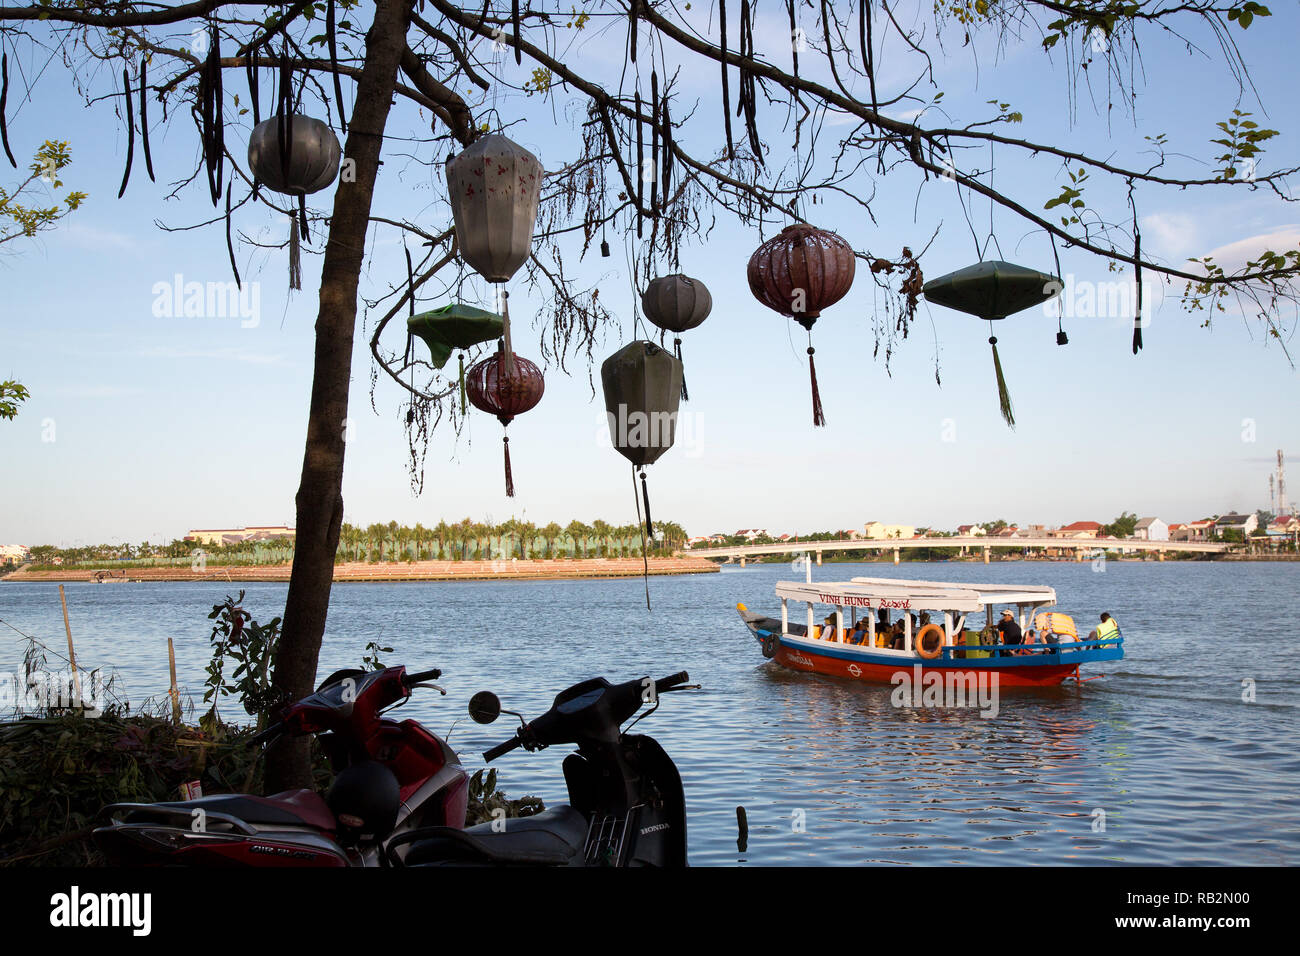 Bateau sur l'eau à Hanoi, Vietnam. Banque D'Images